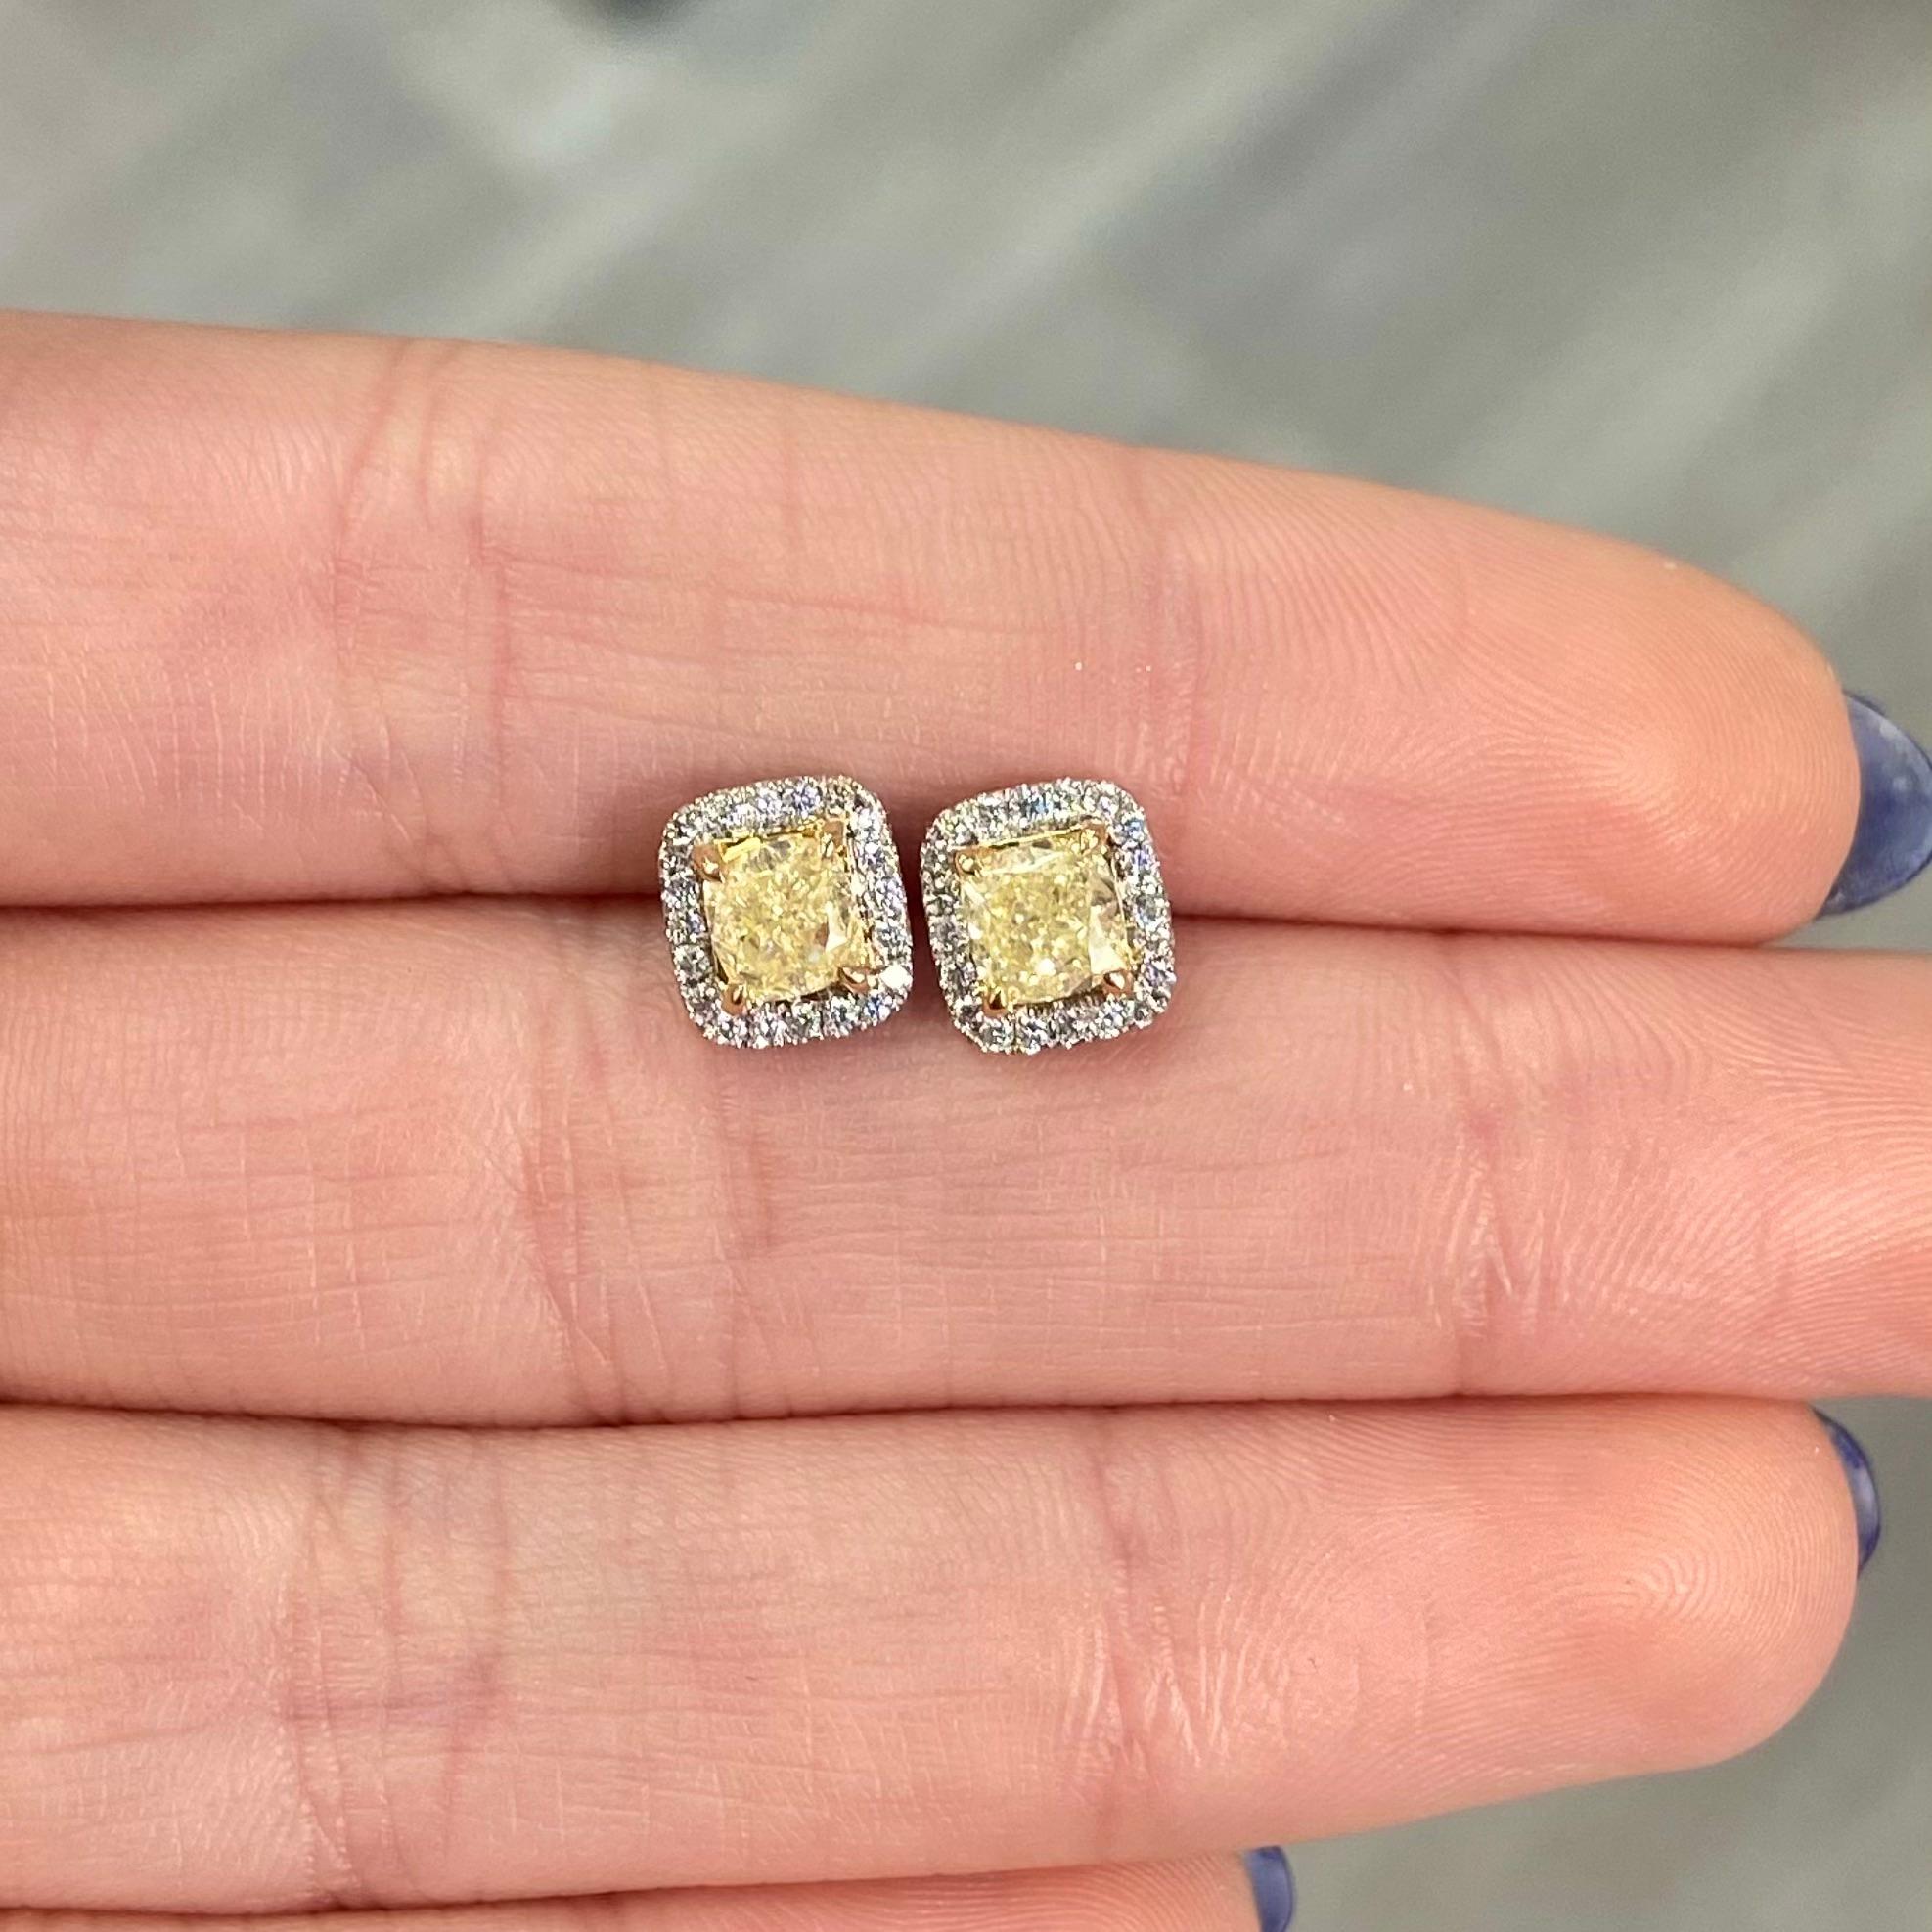 Diamants entièrement naturels
Jaune clair fantaisie 
Serti en or blanc 18kt avec un panier en or jaune
Repoussoirs
Apprixamtely 0.21ct de diamants blancs
VS Clarté
